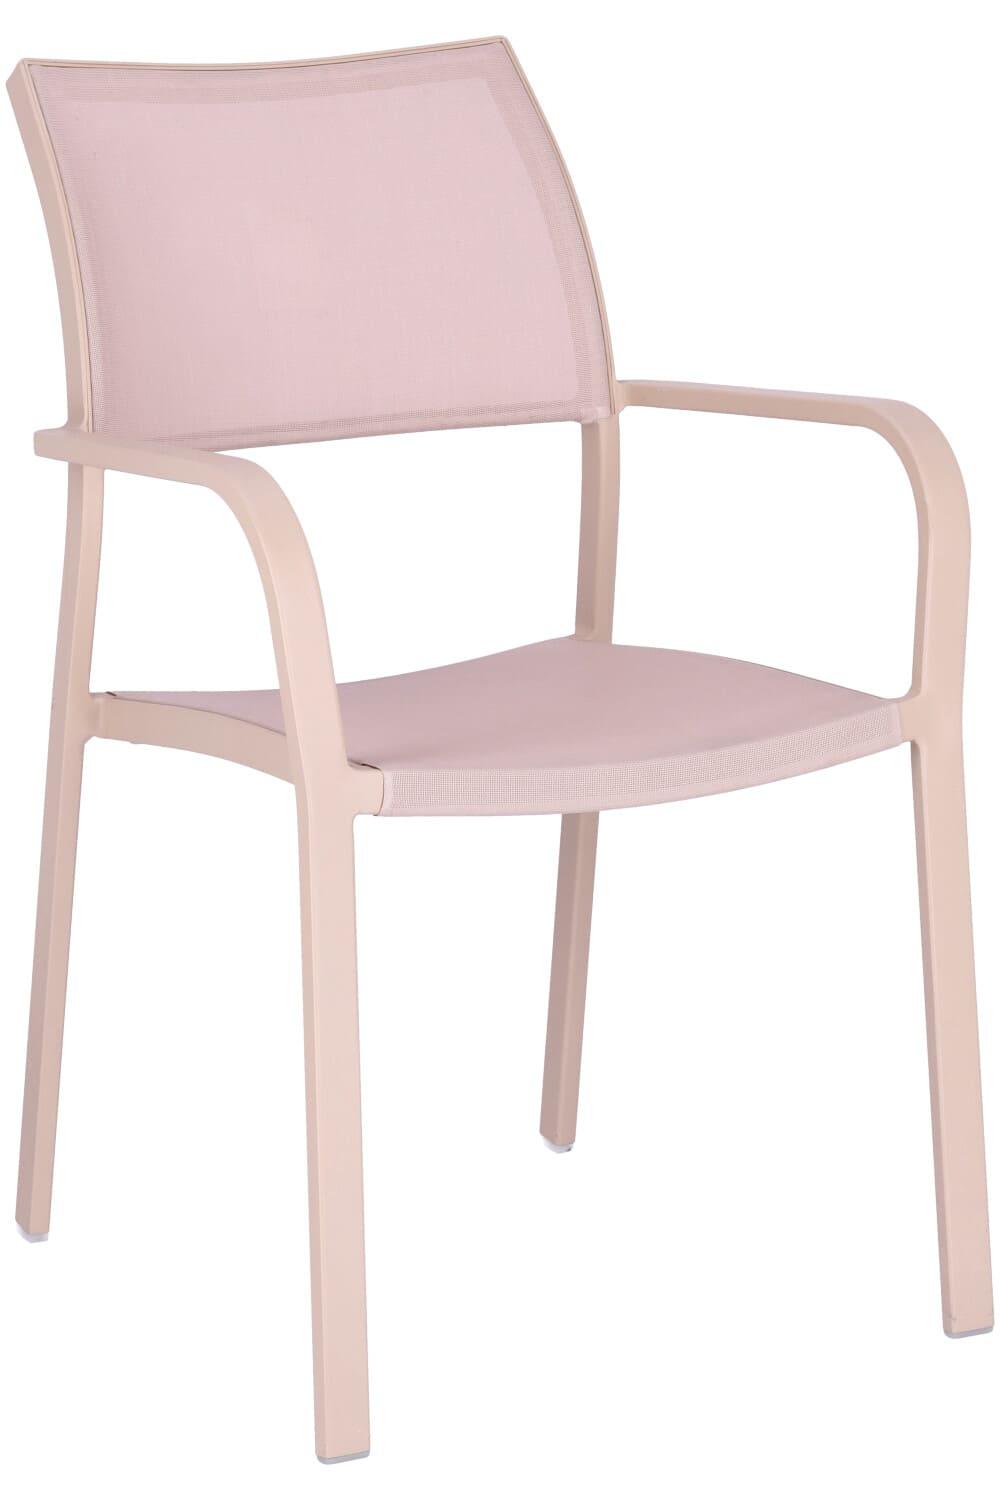 arm chair Alexis